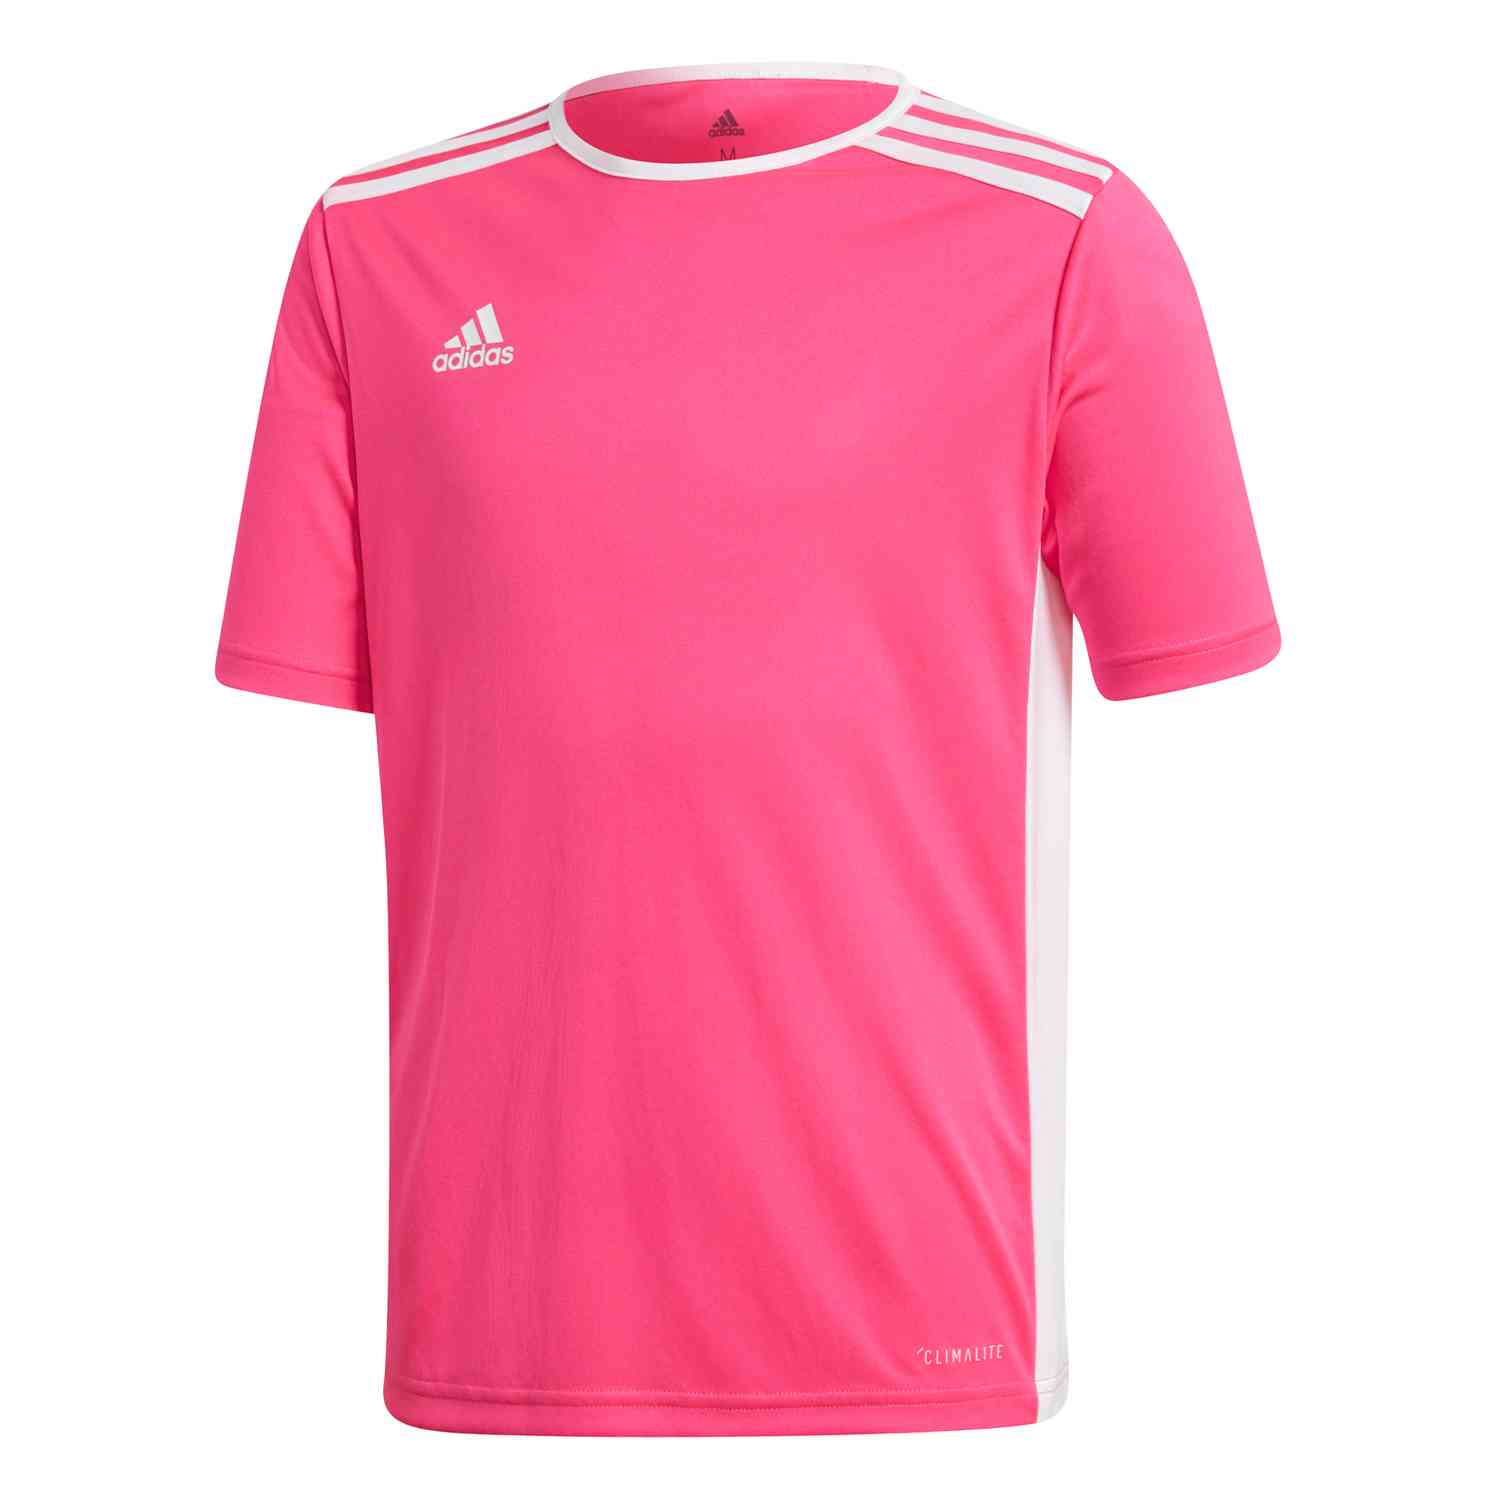 Kids adidas Entrada 18 Jersey - Shock Pink/White - SoccerPro